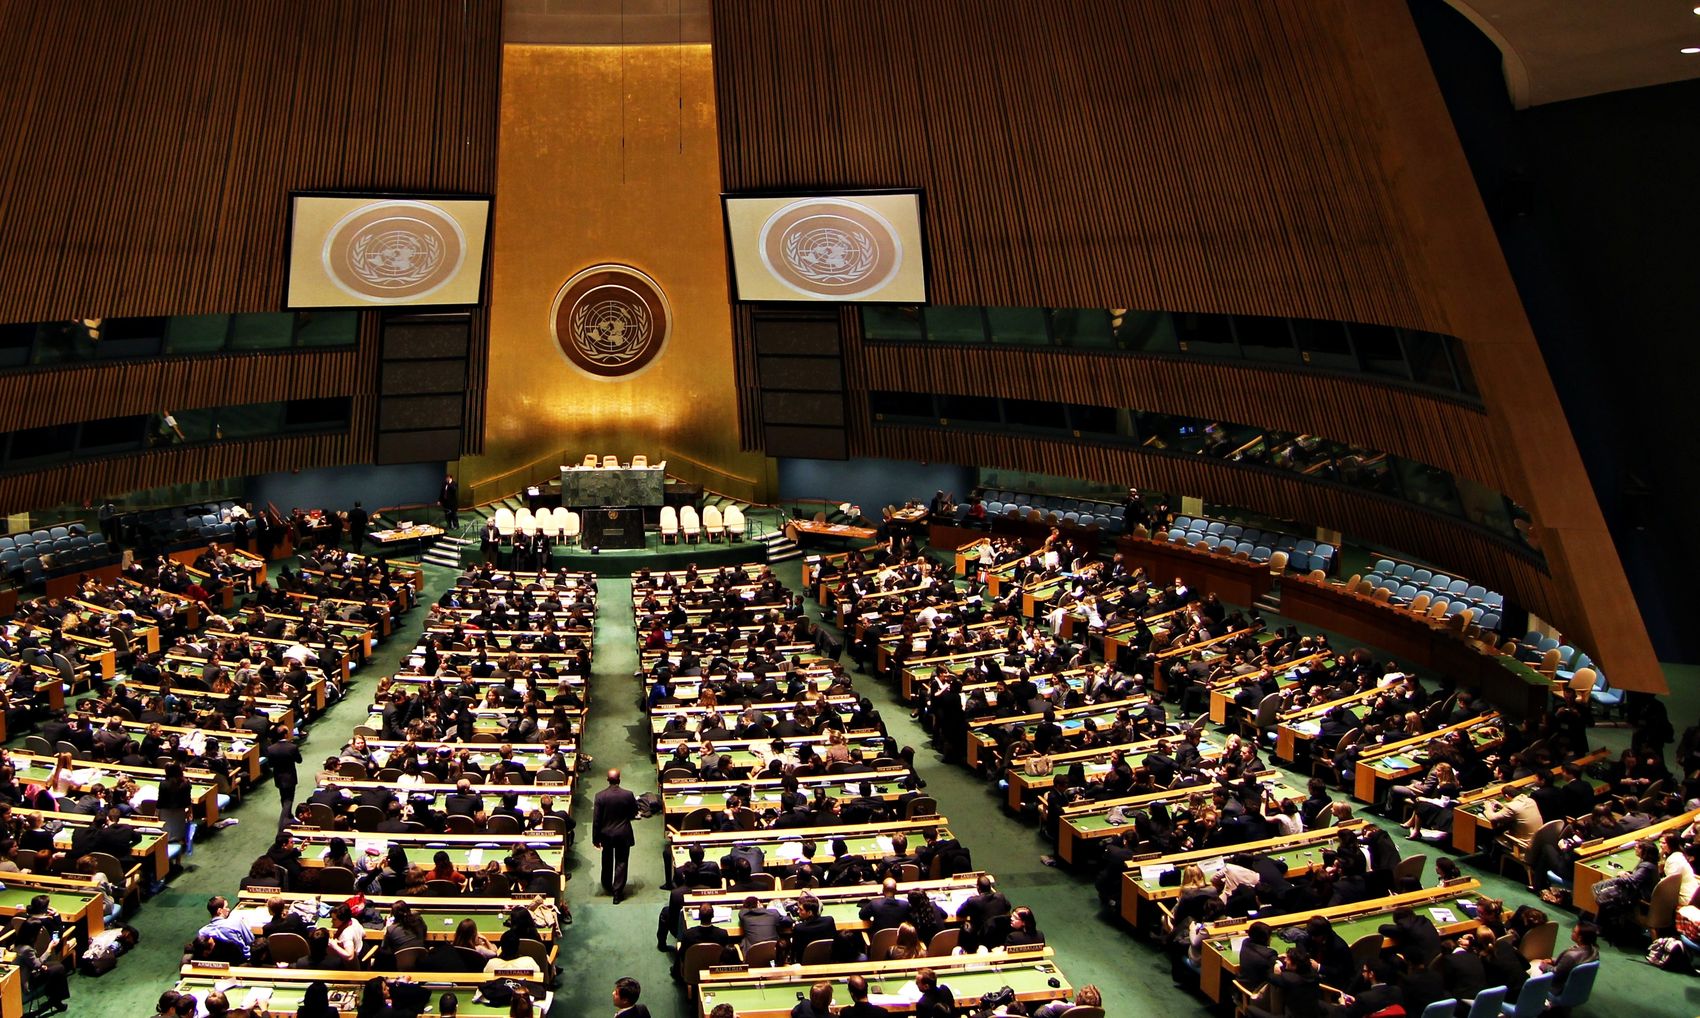 Россия созывает заседание Совбеза ООН по ситуации в Украине